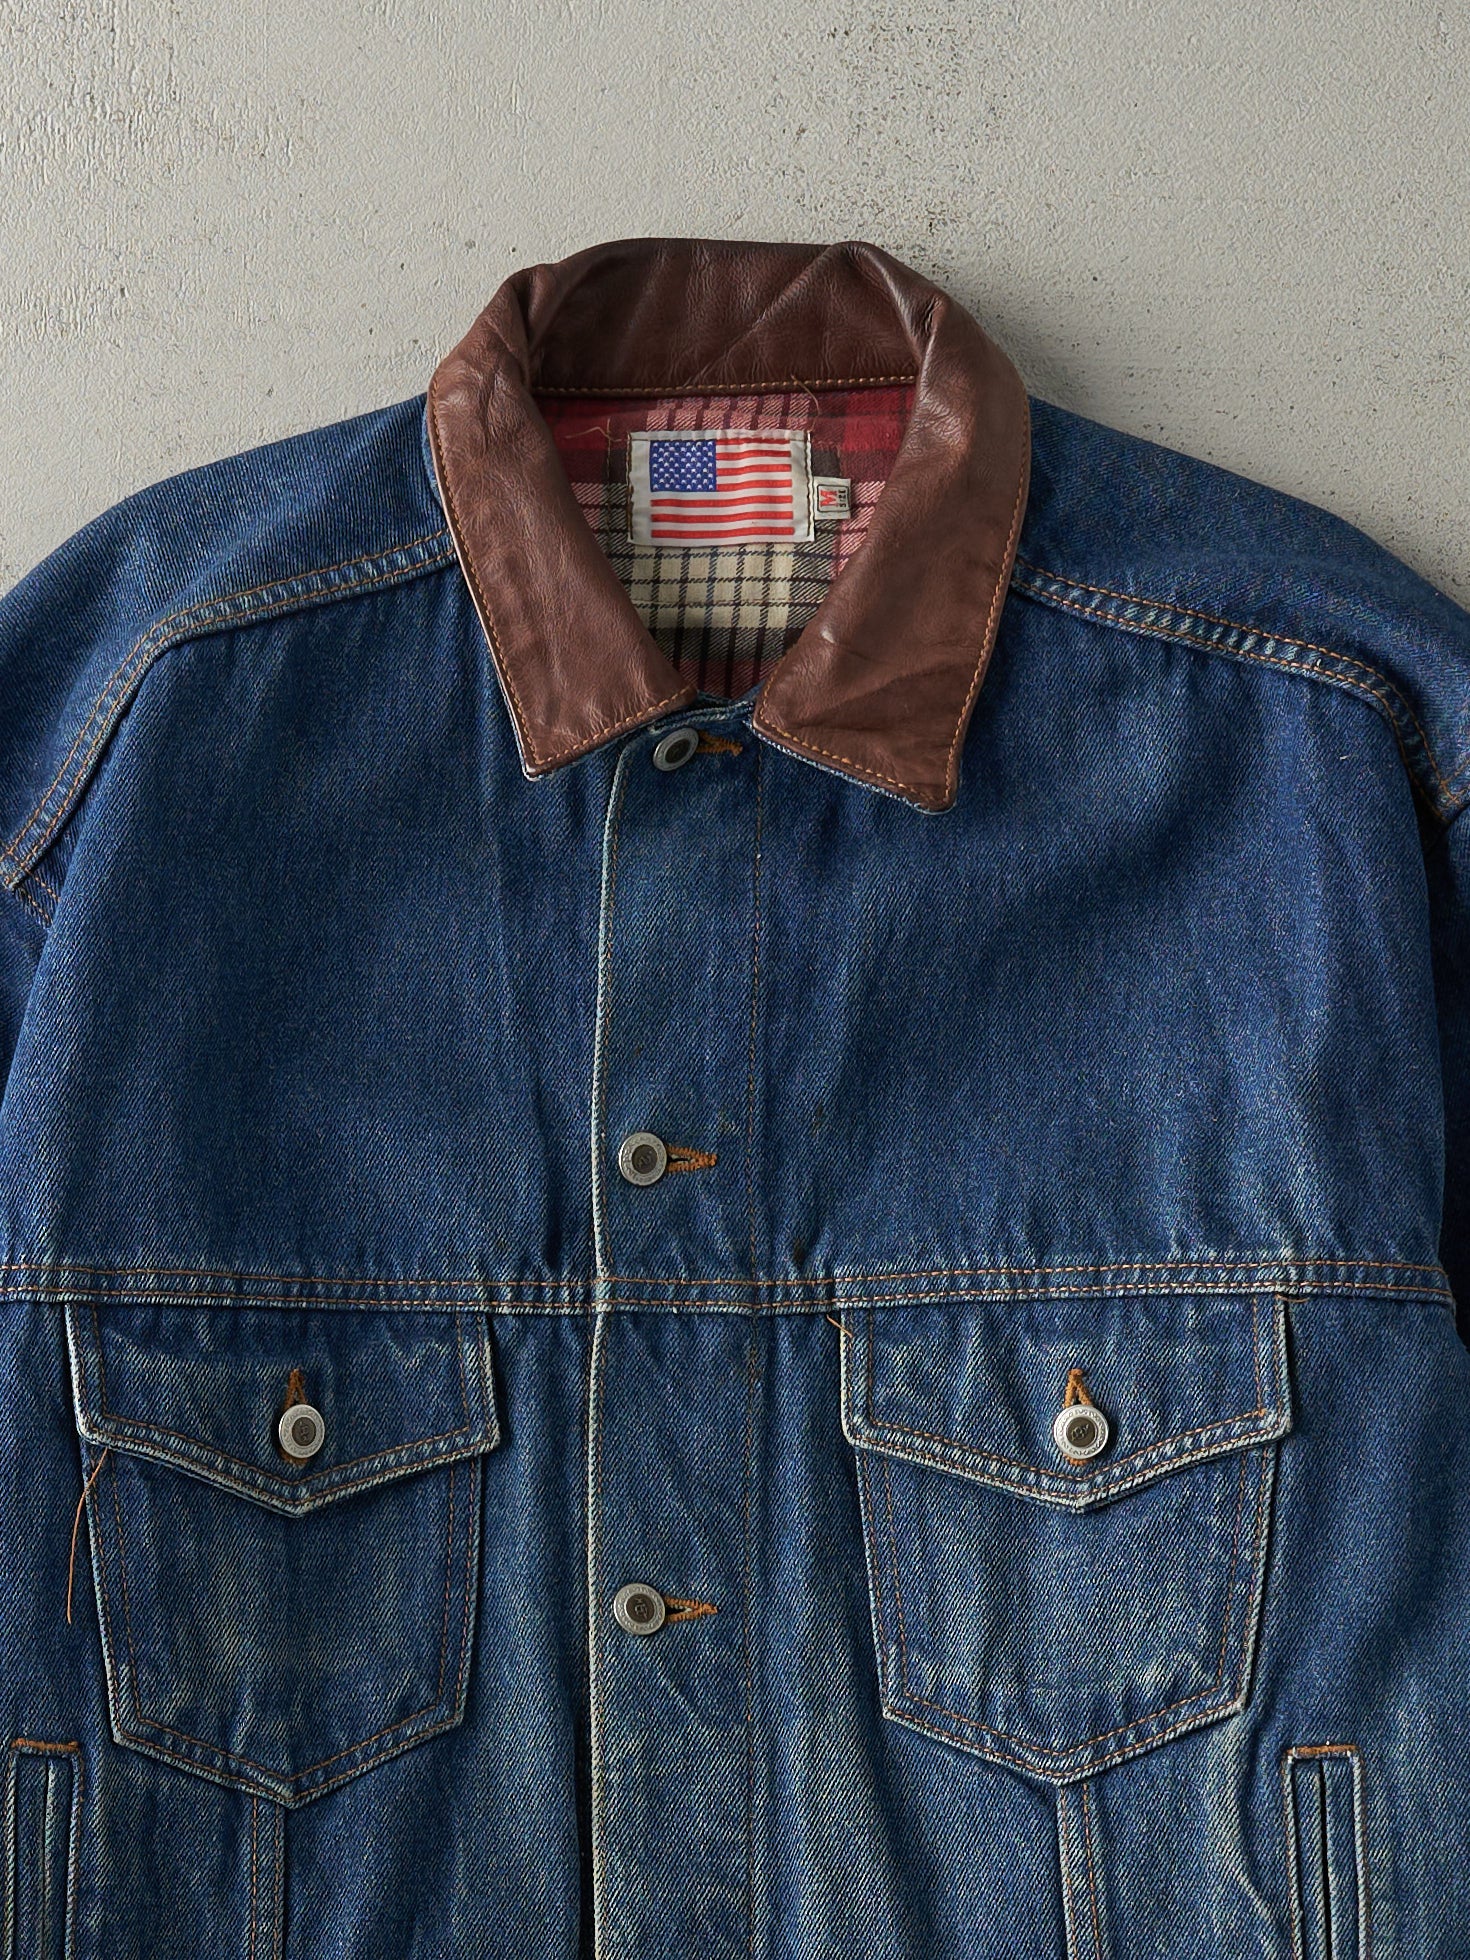 Vintage 90s Dark Wash Denim Jacket (M)